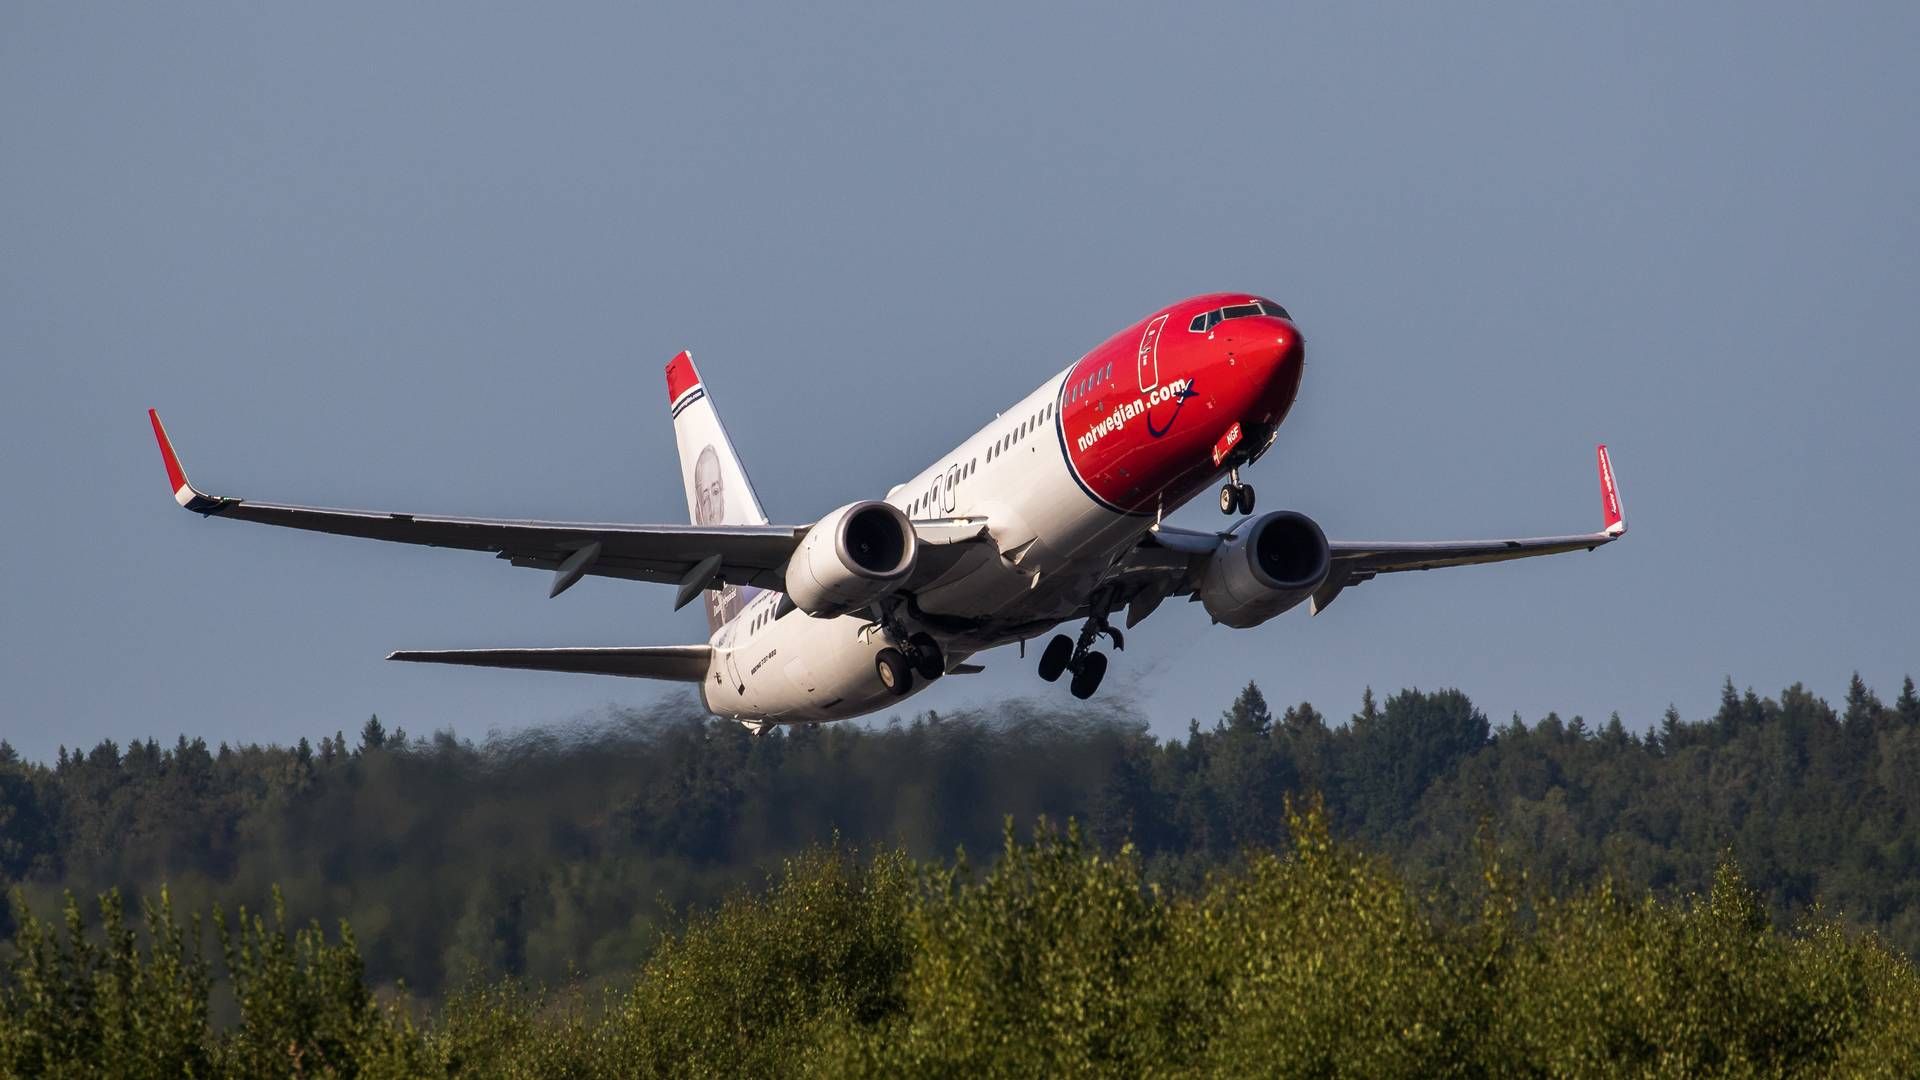 Der skal investeres mere i at øge produktionen af bæredygtigt flybrændstof, hvis man vil nå 2025-mål, lyder det fra Norwegian. | Foto: Pr / David Peacock for Norwegian